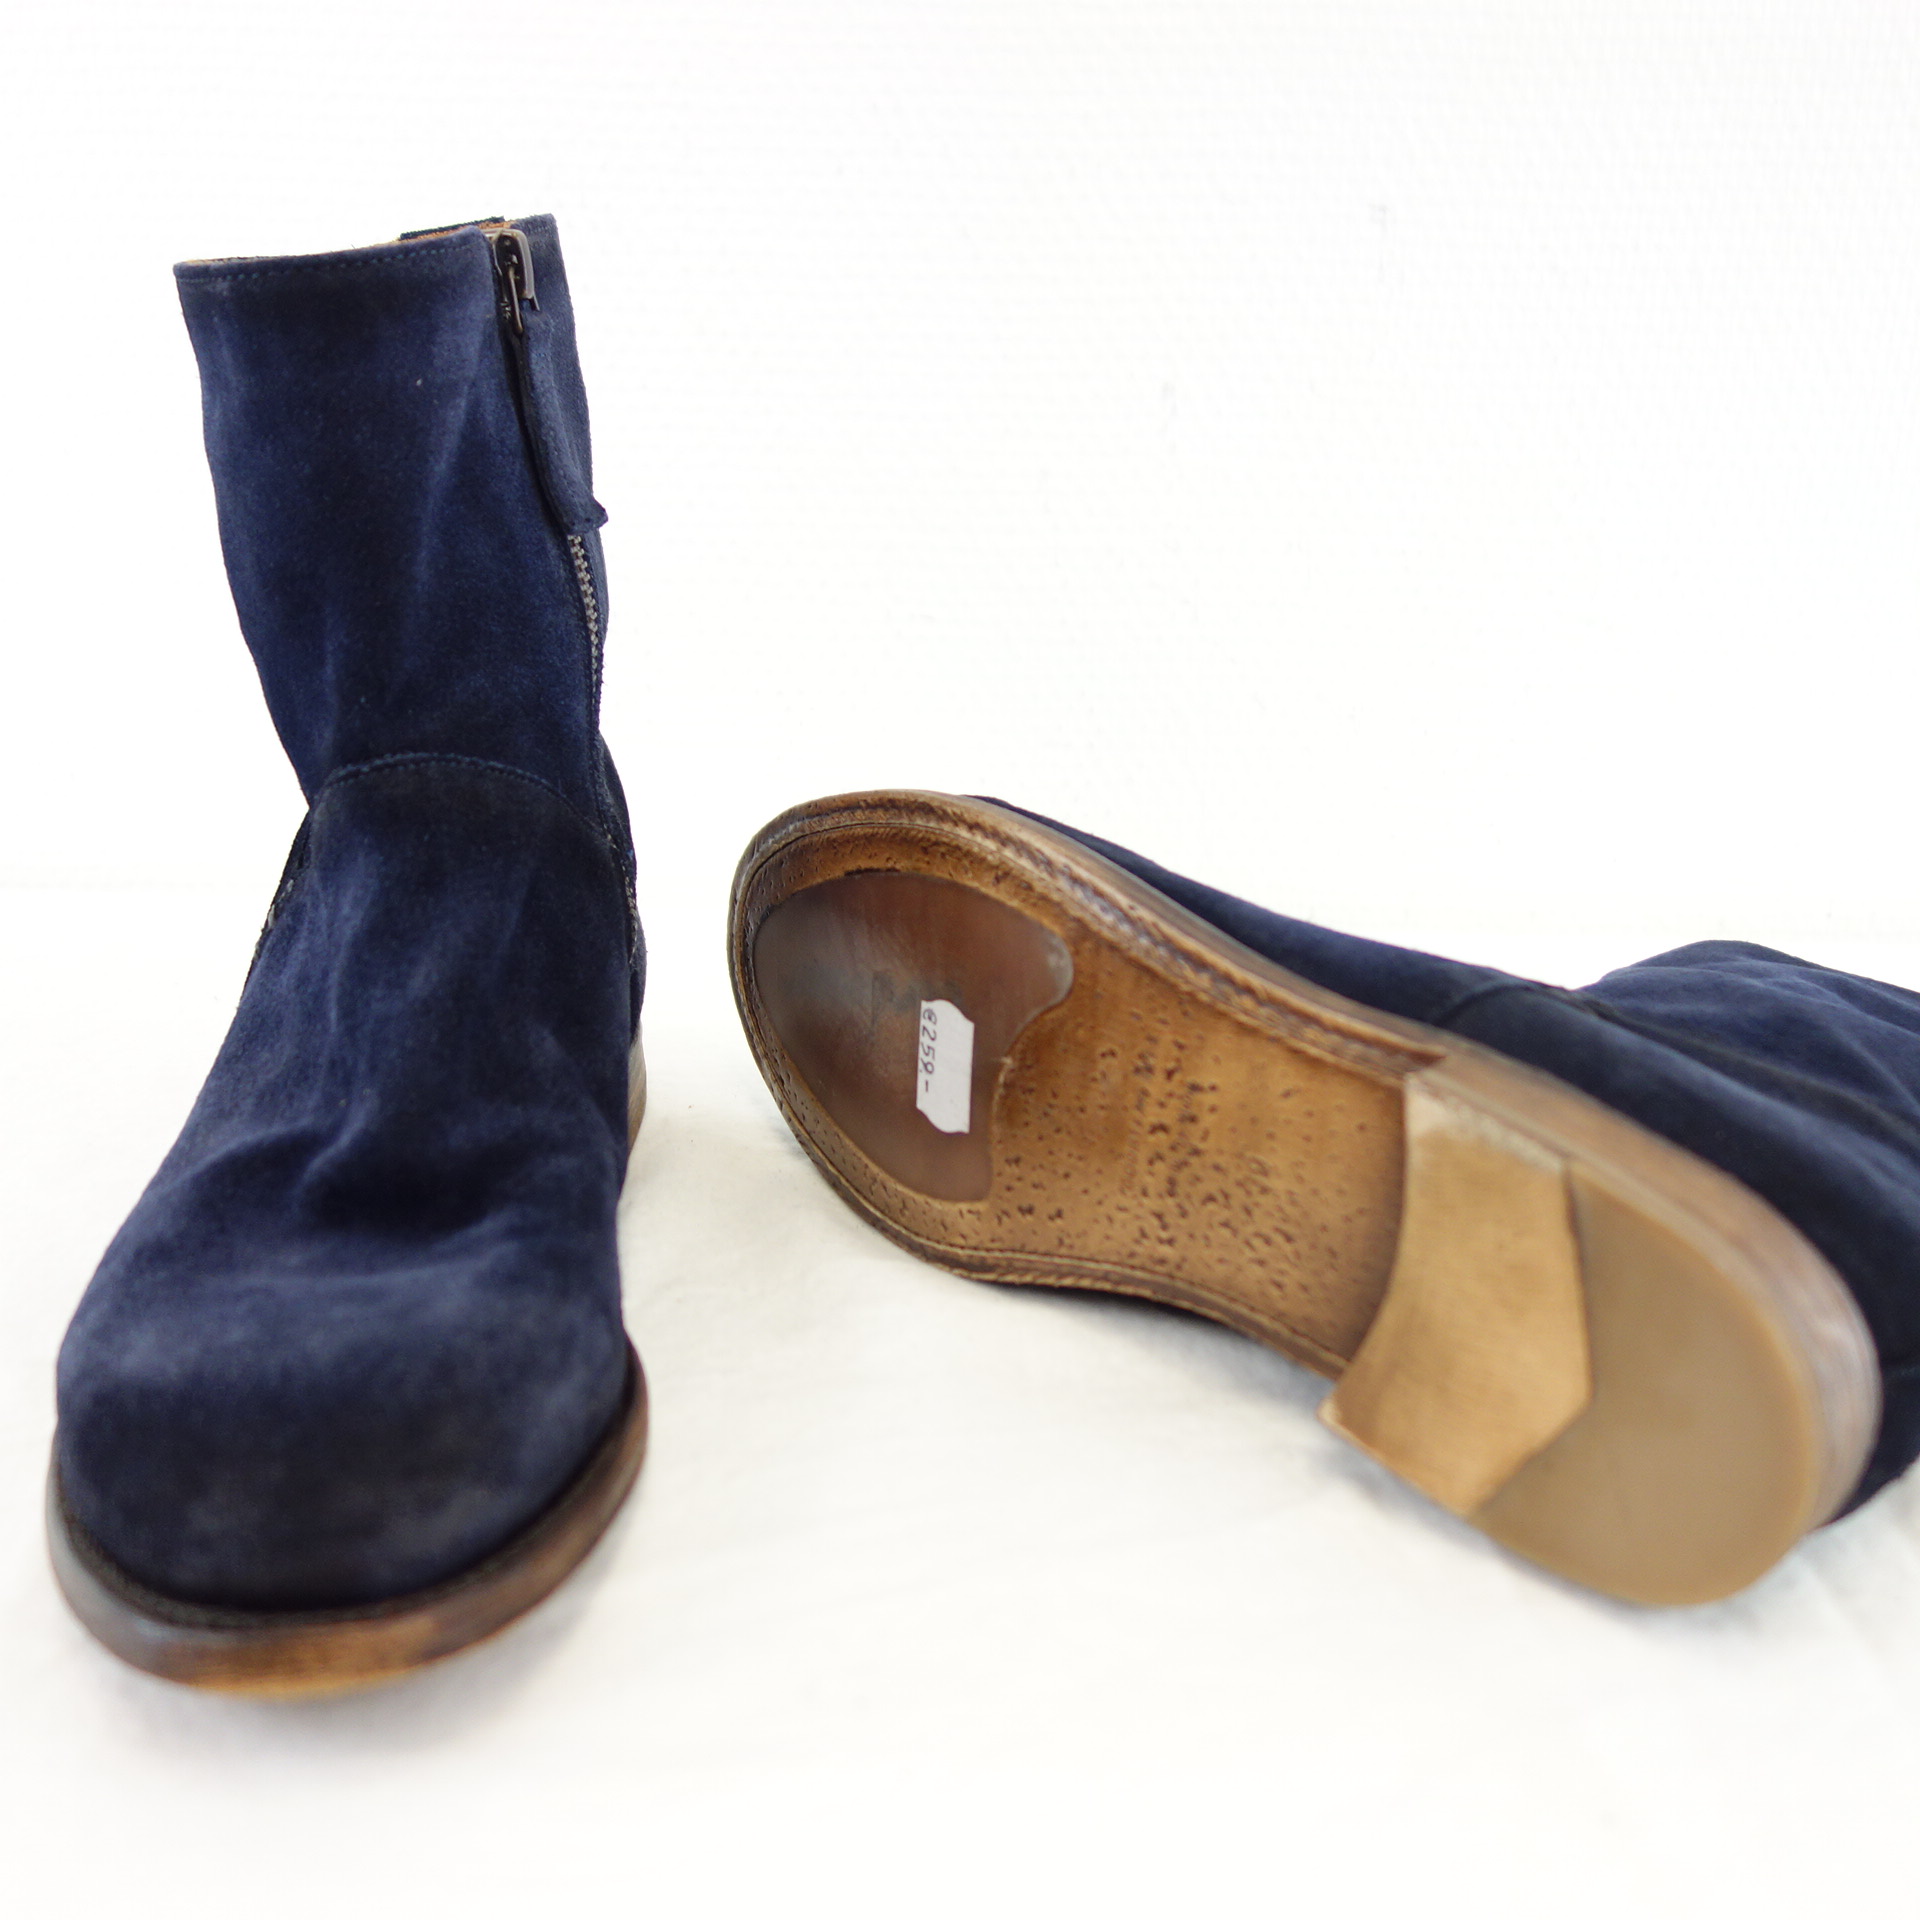 CORDWAINER Damen Schuhe Stiefeletten Boots Stiefel Wildleder Navy Blau 